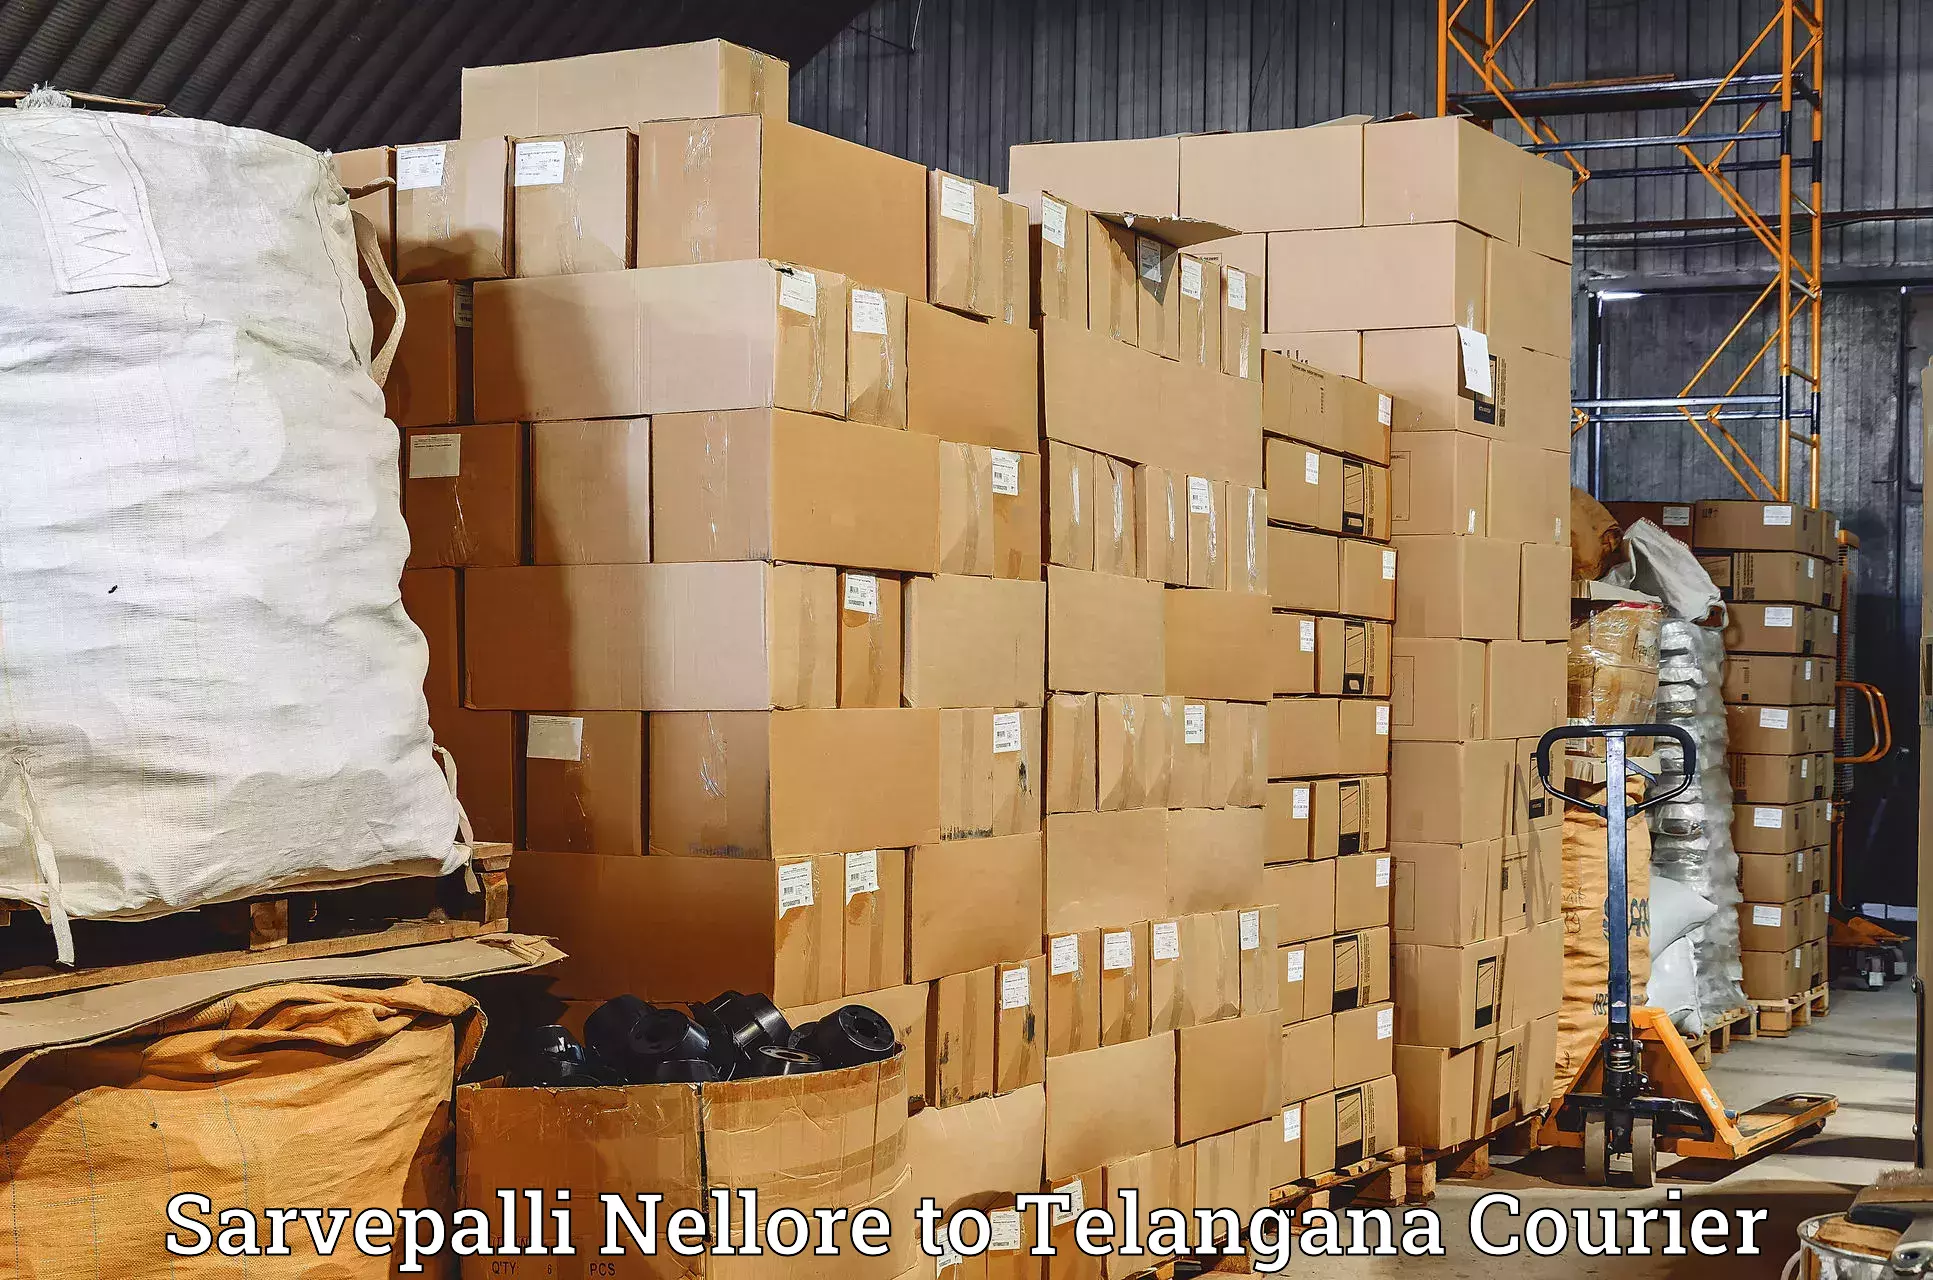 Package delivery network Sarvepalli Nellore to Tallada